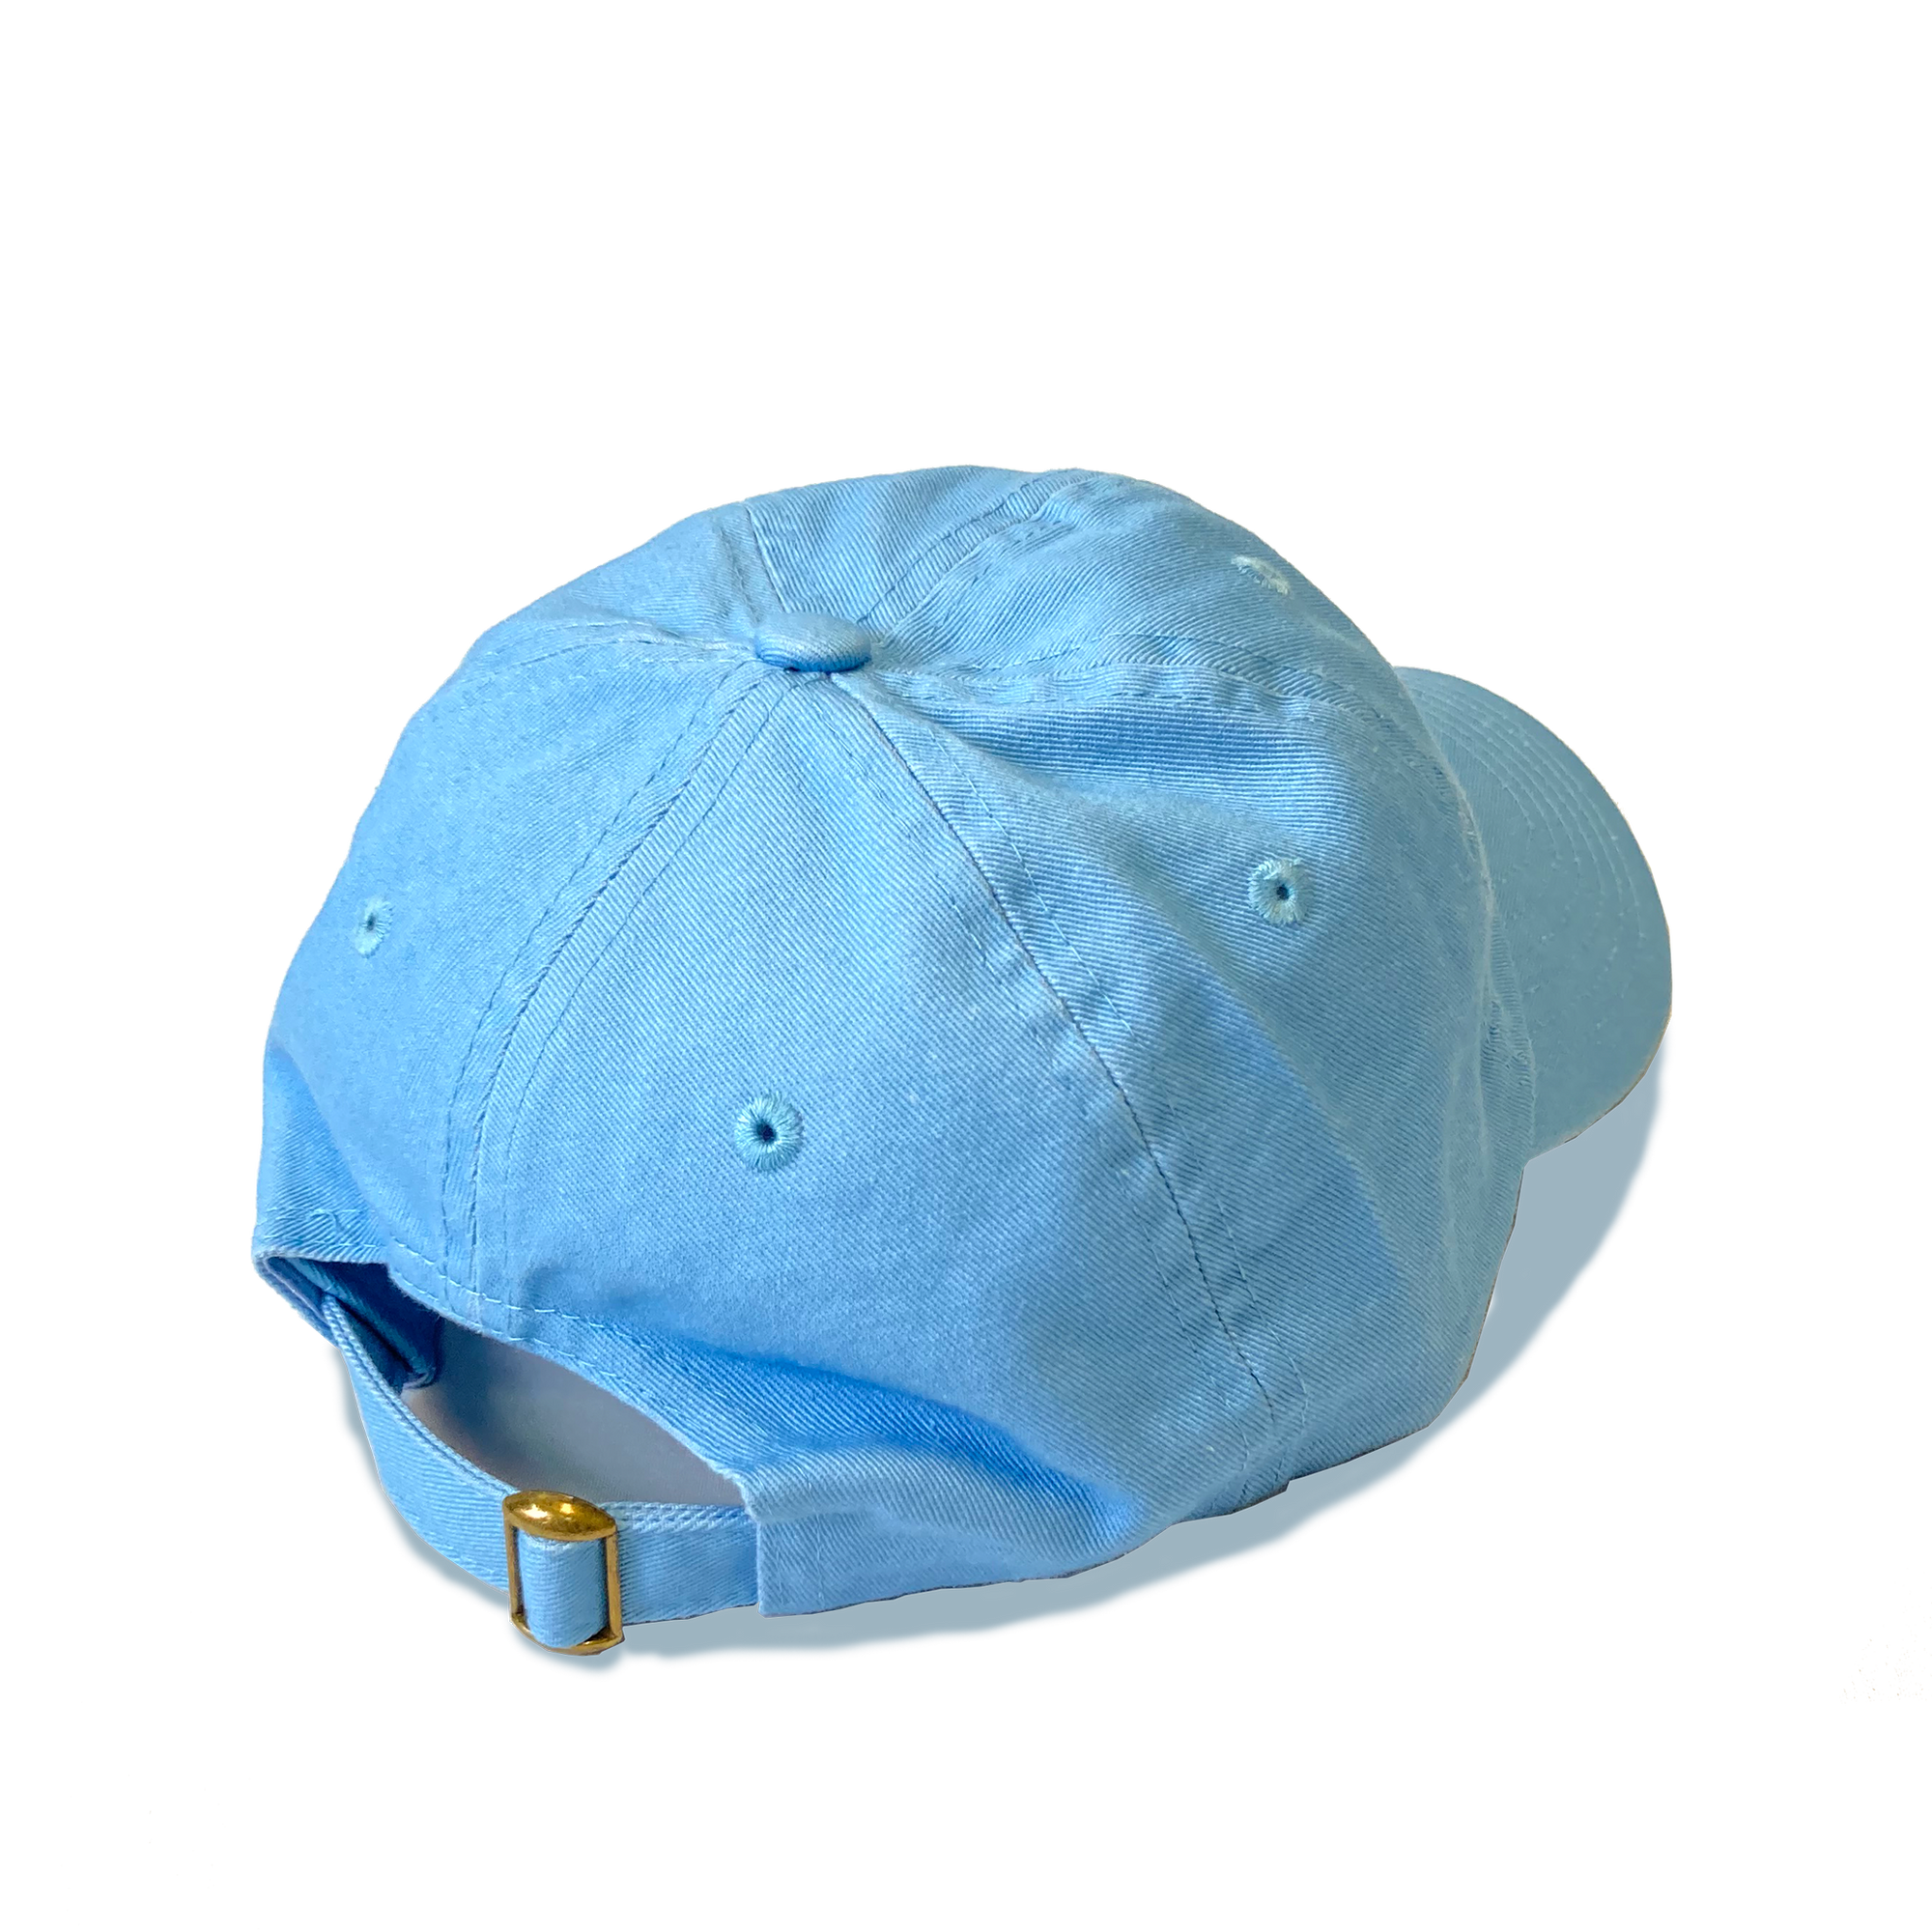 Blue Baseball Hat - 40 Days for Life